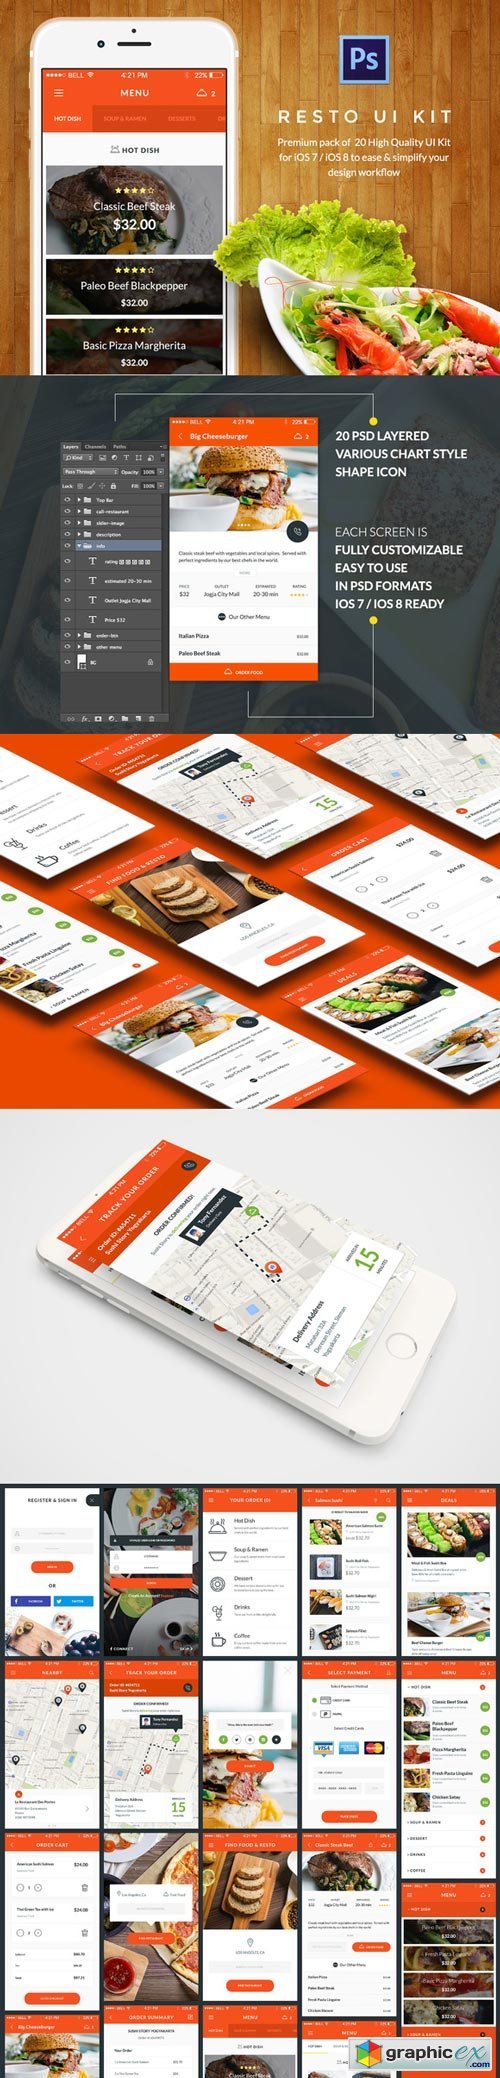 Food & Resto UI Kit